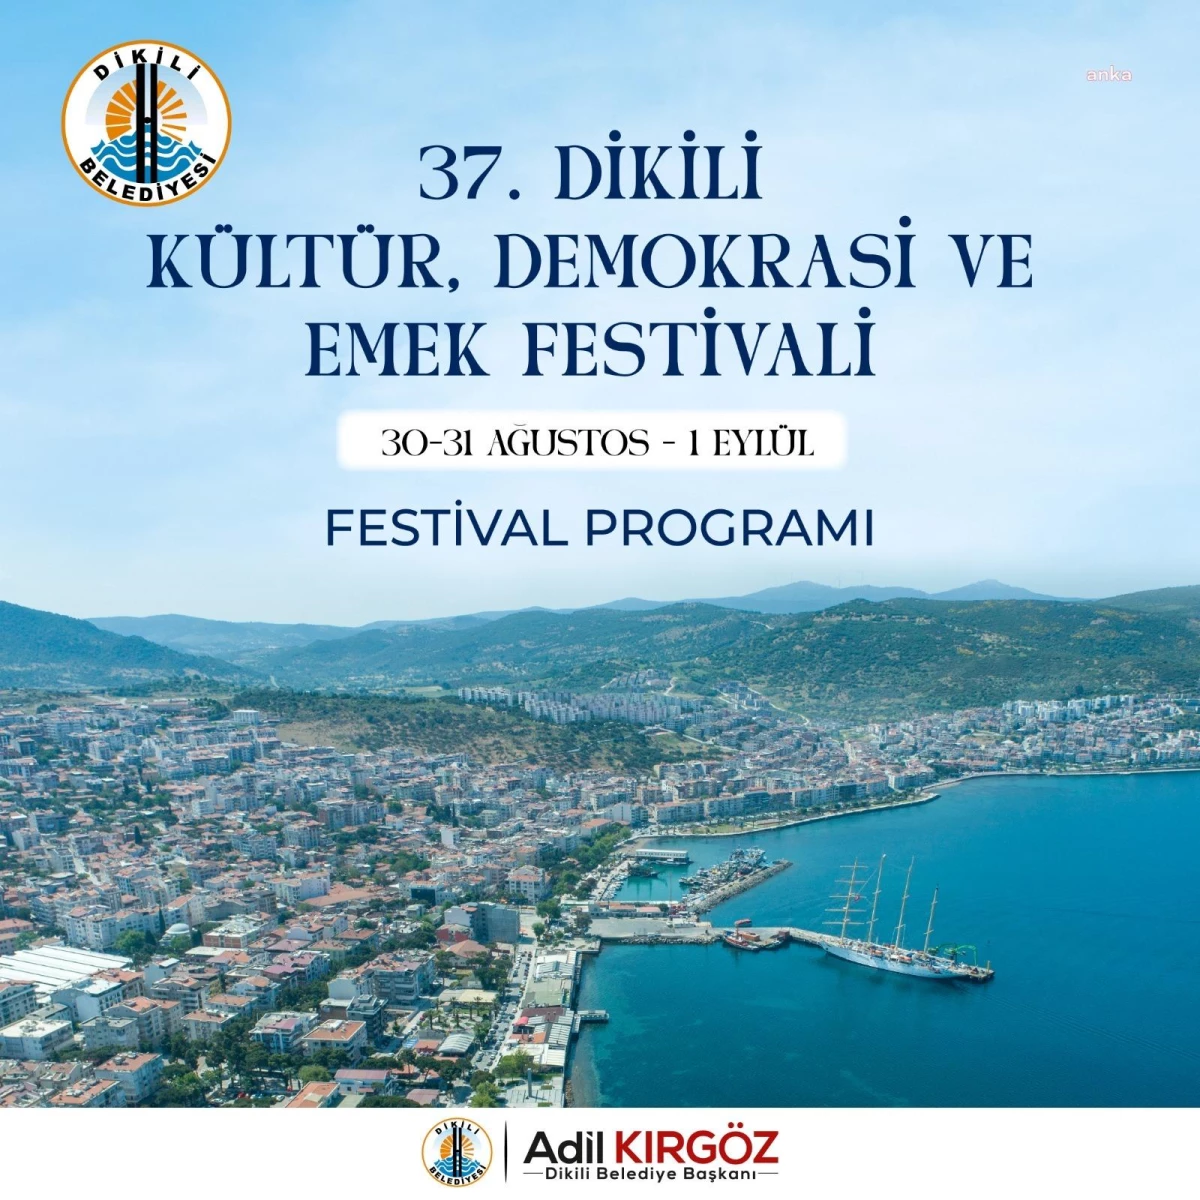 37. Dikili Kültür, Demokrasi ve Emek Festivali